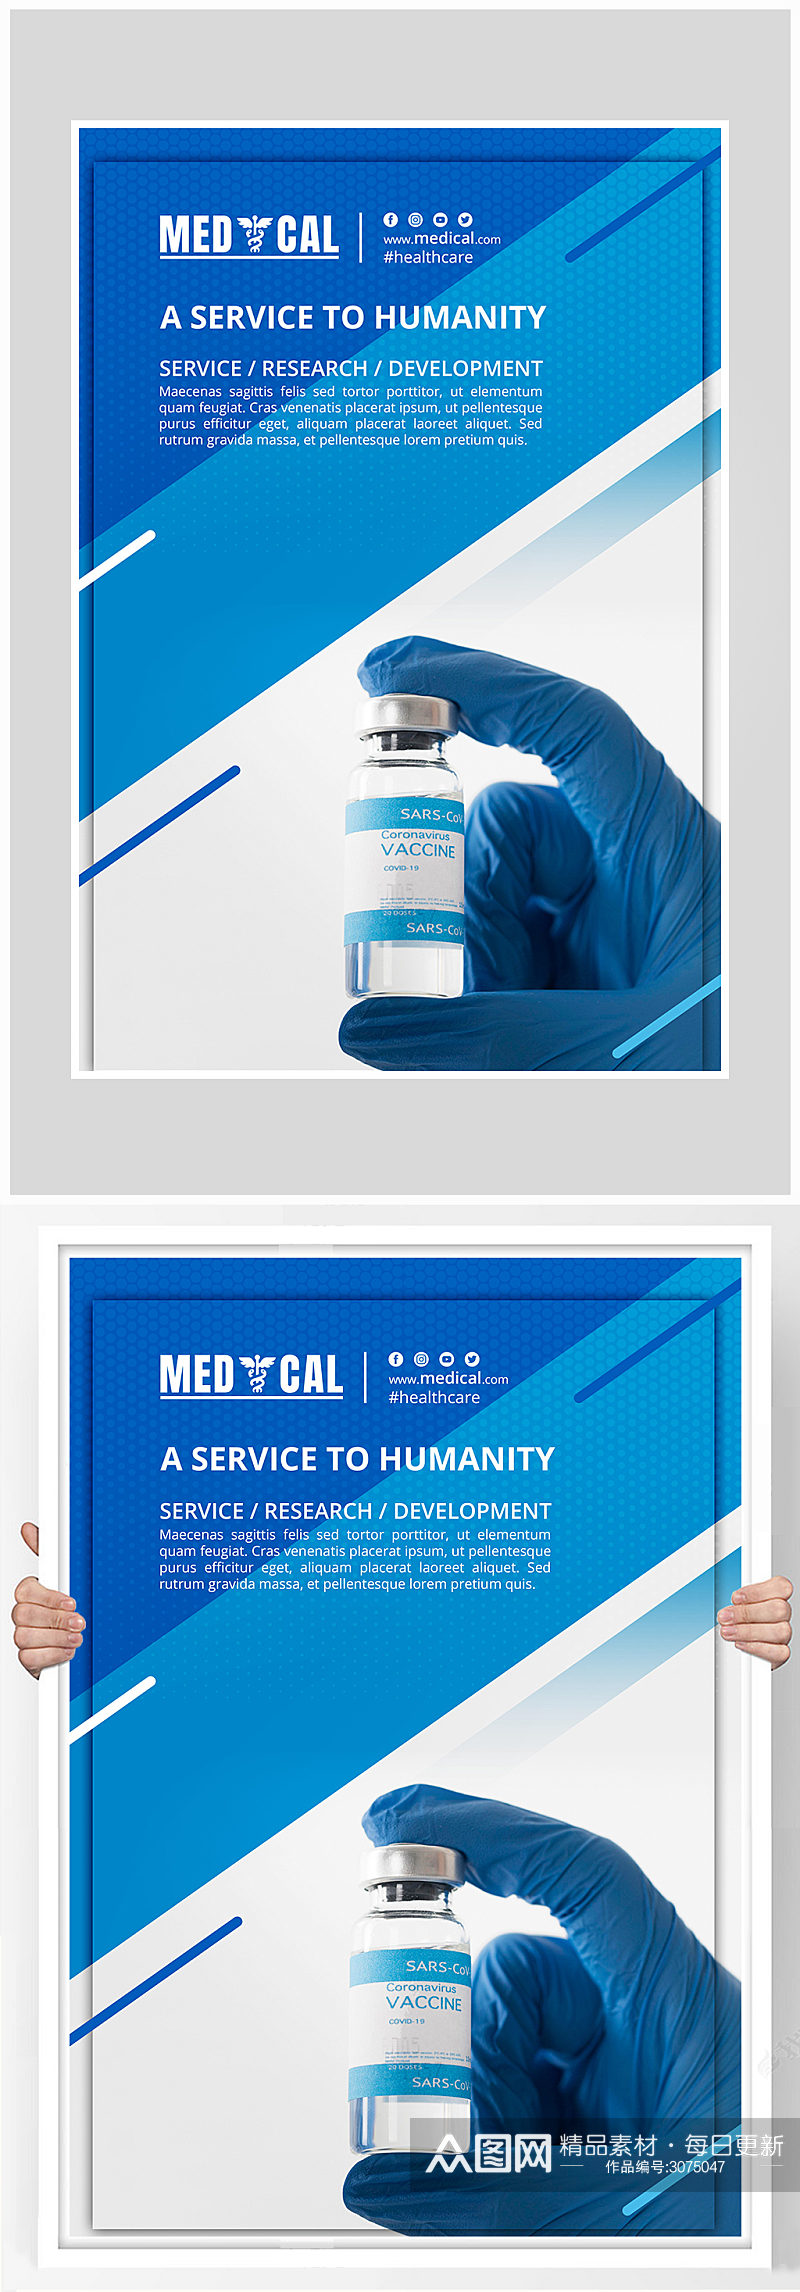 简约蓝色医疗治疗海报设计素材